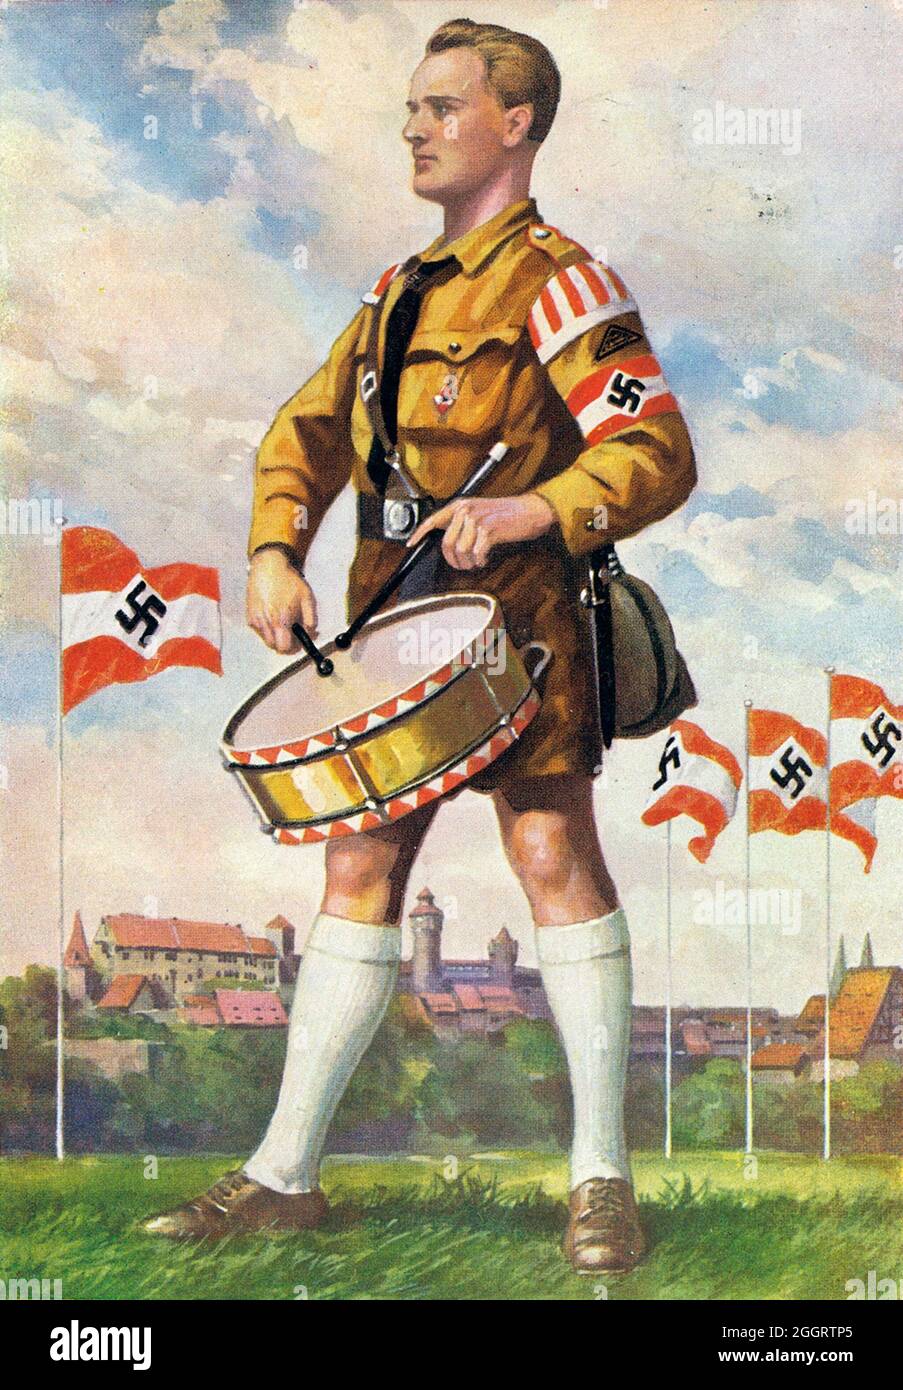 Ein Vintage-Plakat zur jährlichen Nazi-Nürnberger Kundgebung, auf dem ein uniformierte Mitglied der Hitler-Jugend (HJ) eine Militärtrommel spielt Stockfoto